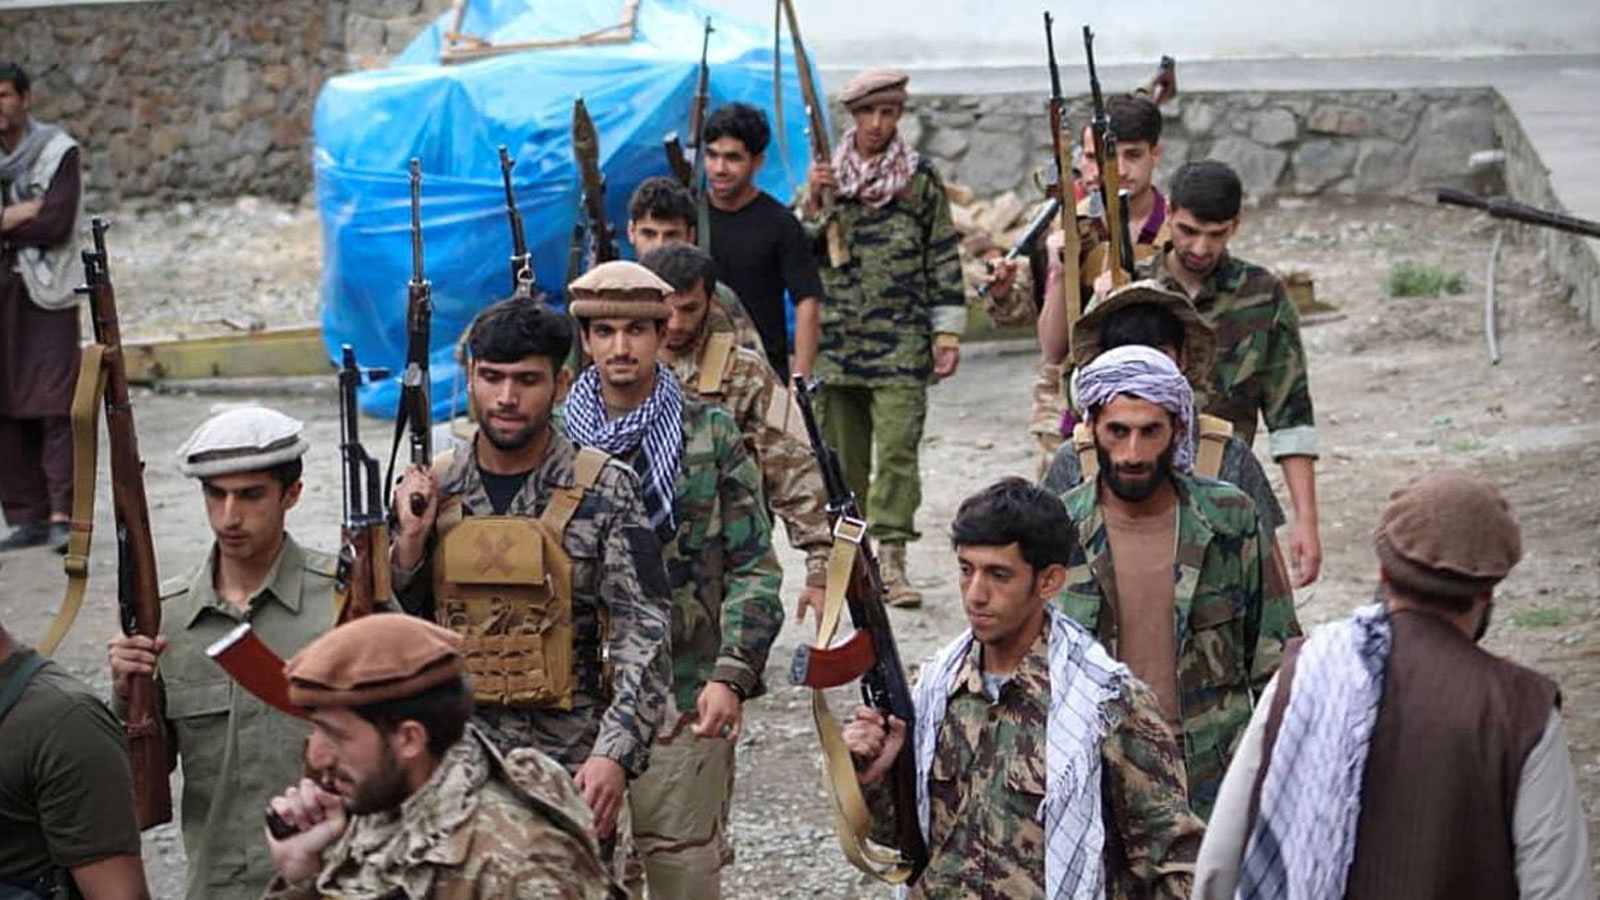 جماعة إسلامية إيطالية: طالبان قراصنة جبال وتجار مخدرات والاعتراف بهم شرعنة لداعش